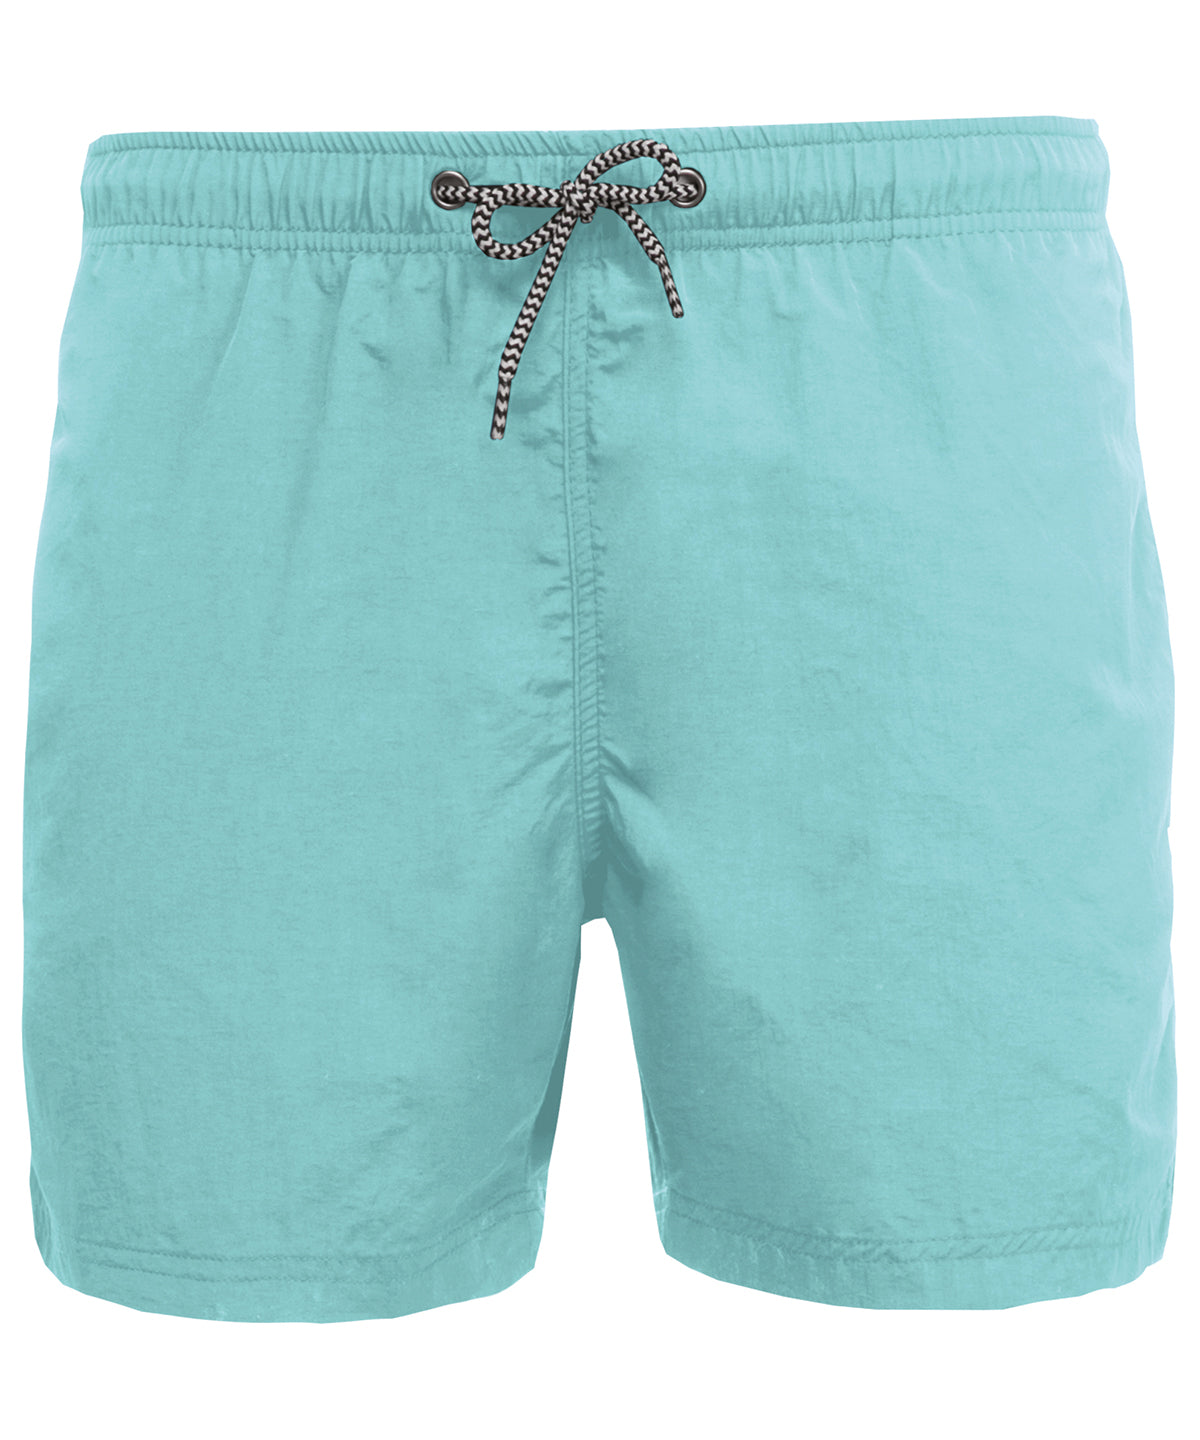 Kariban Proact Swim shorts